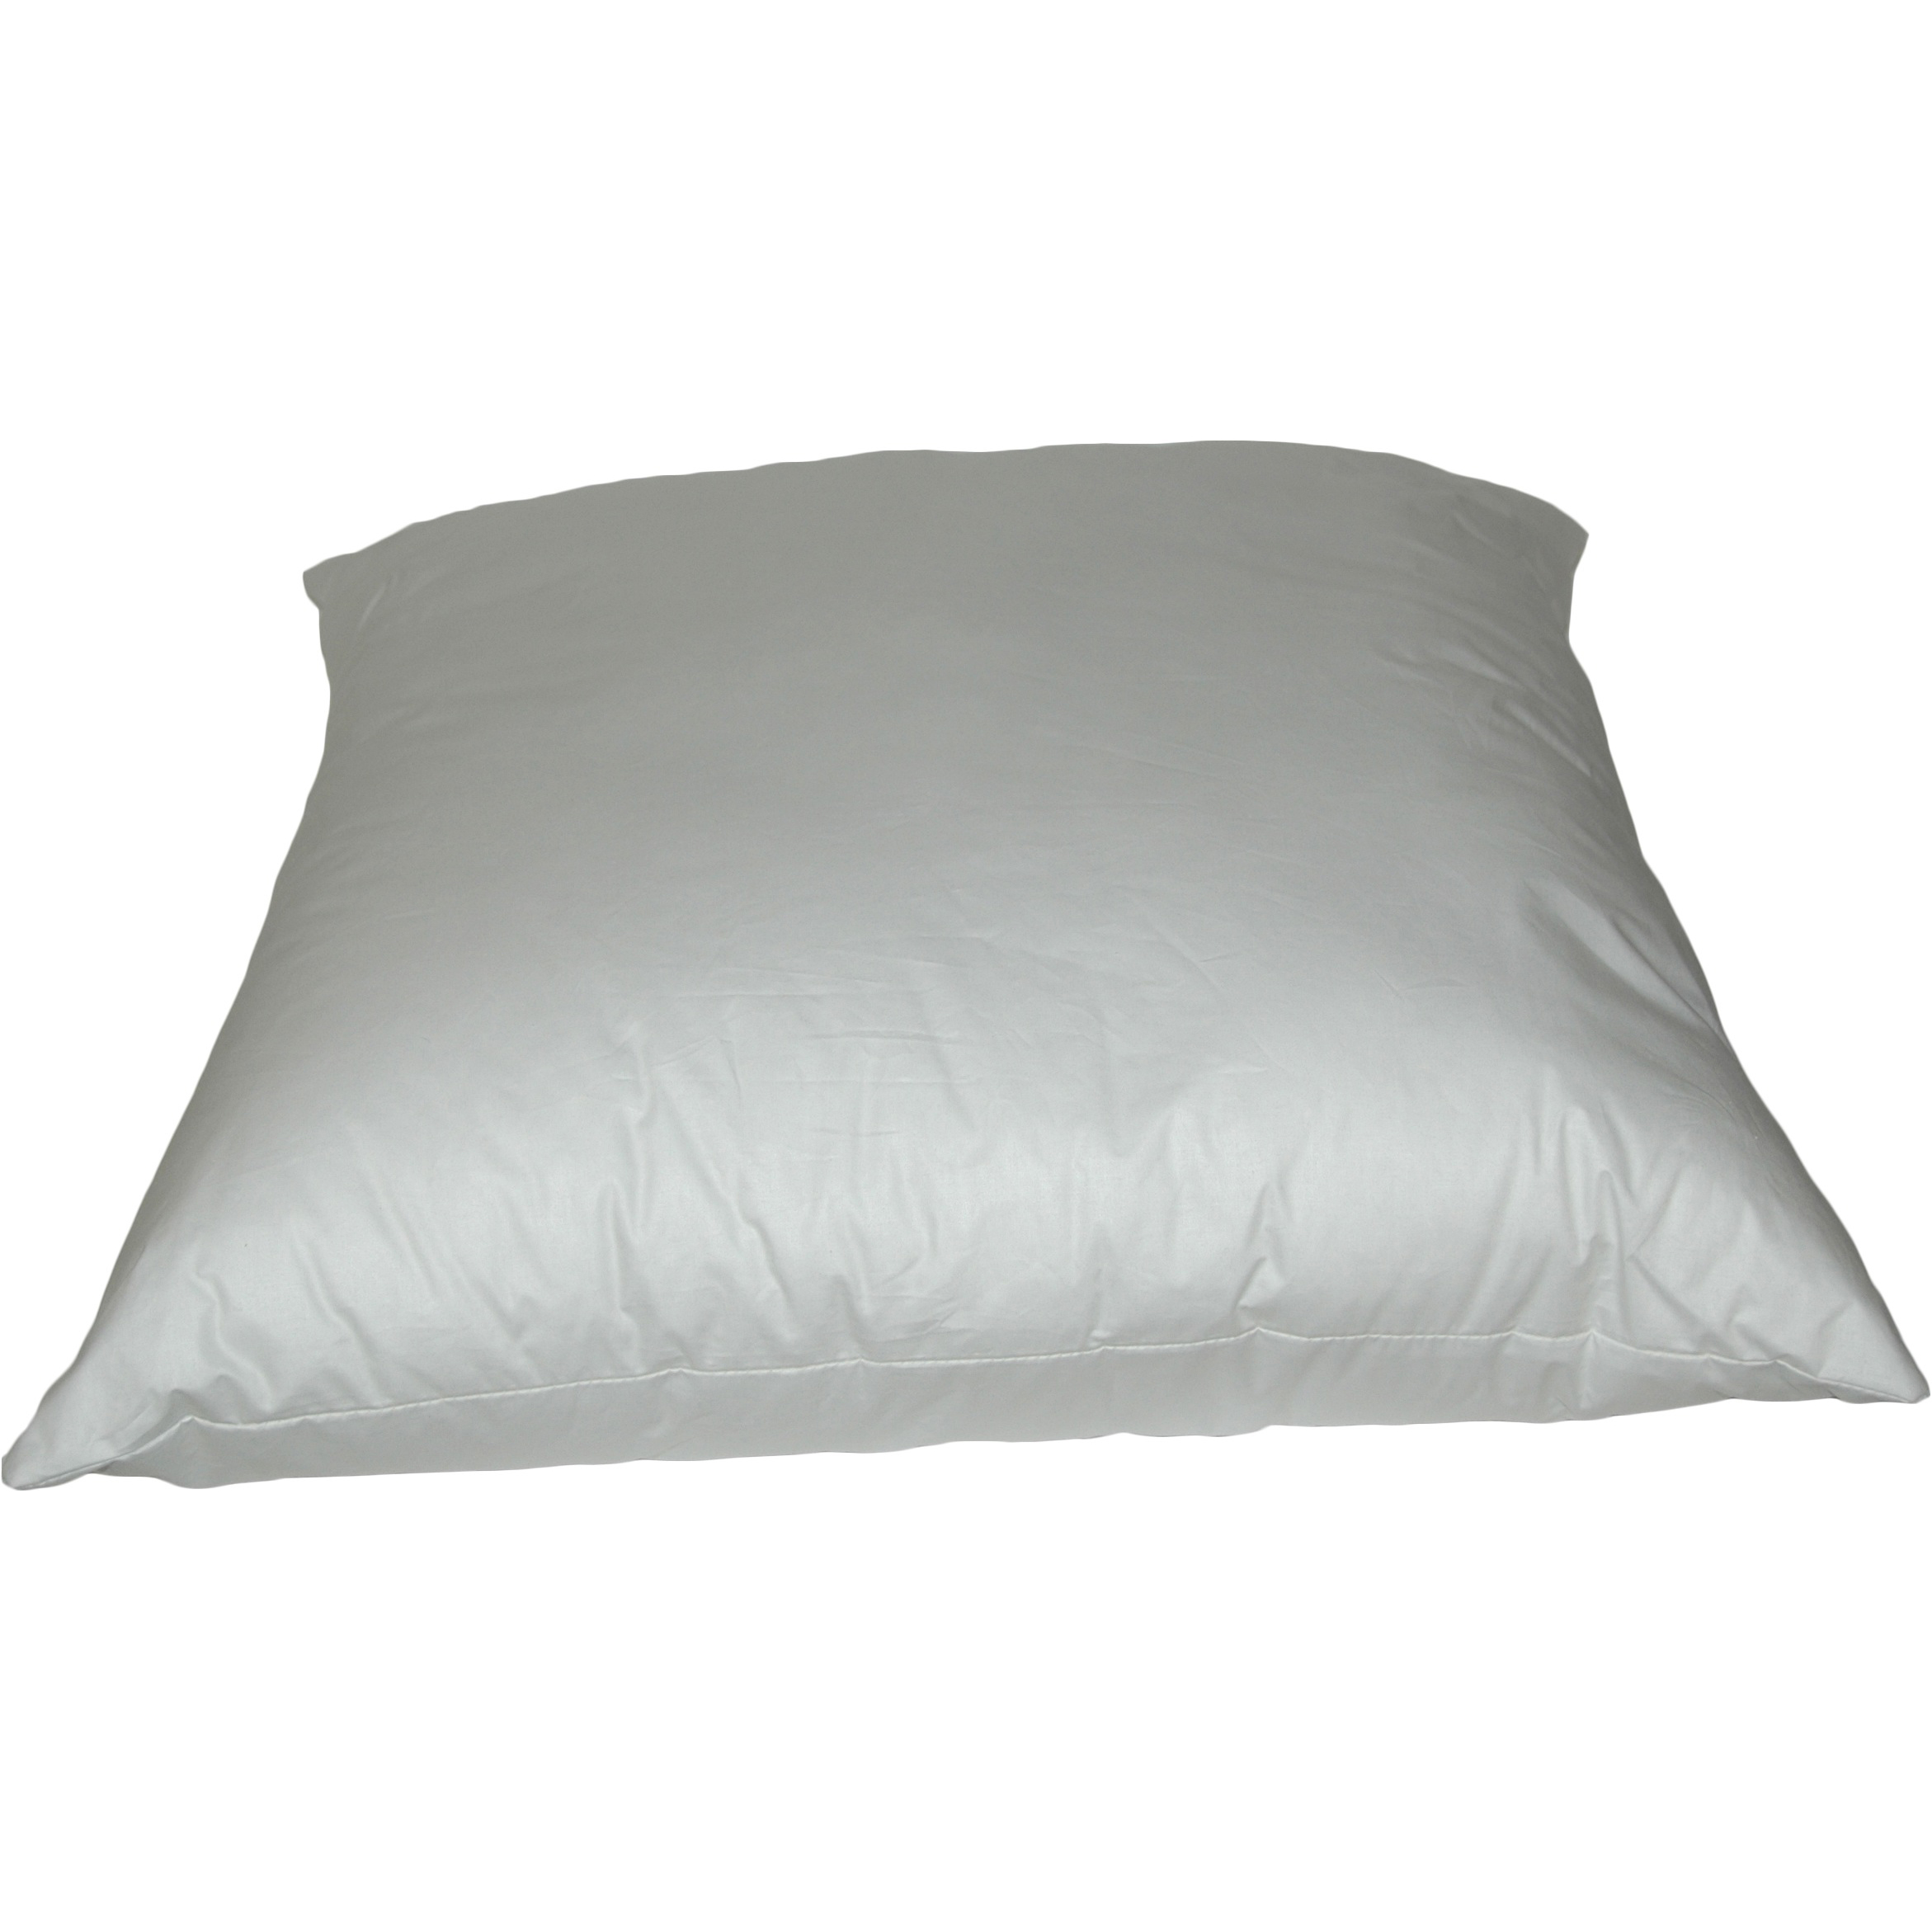 K-Fiber Pillows 12 inch